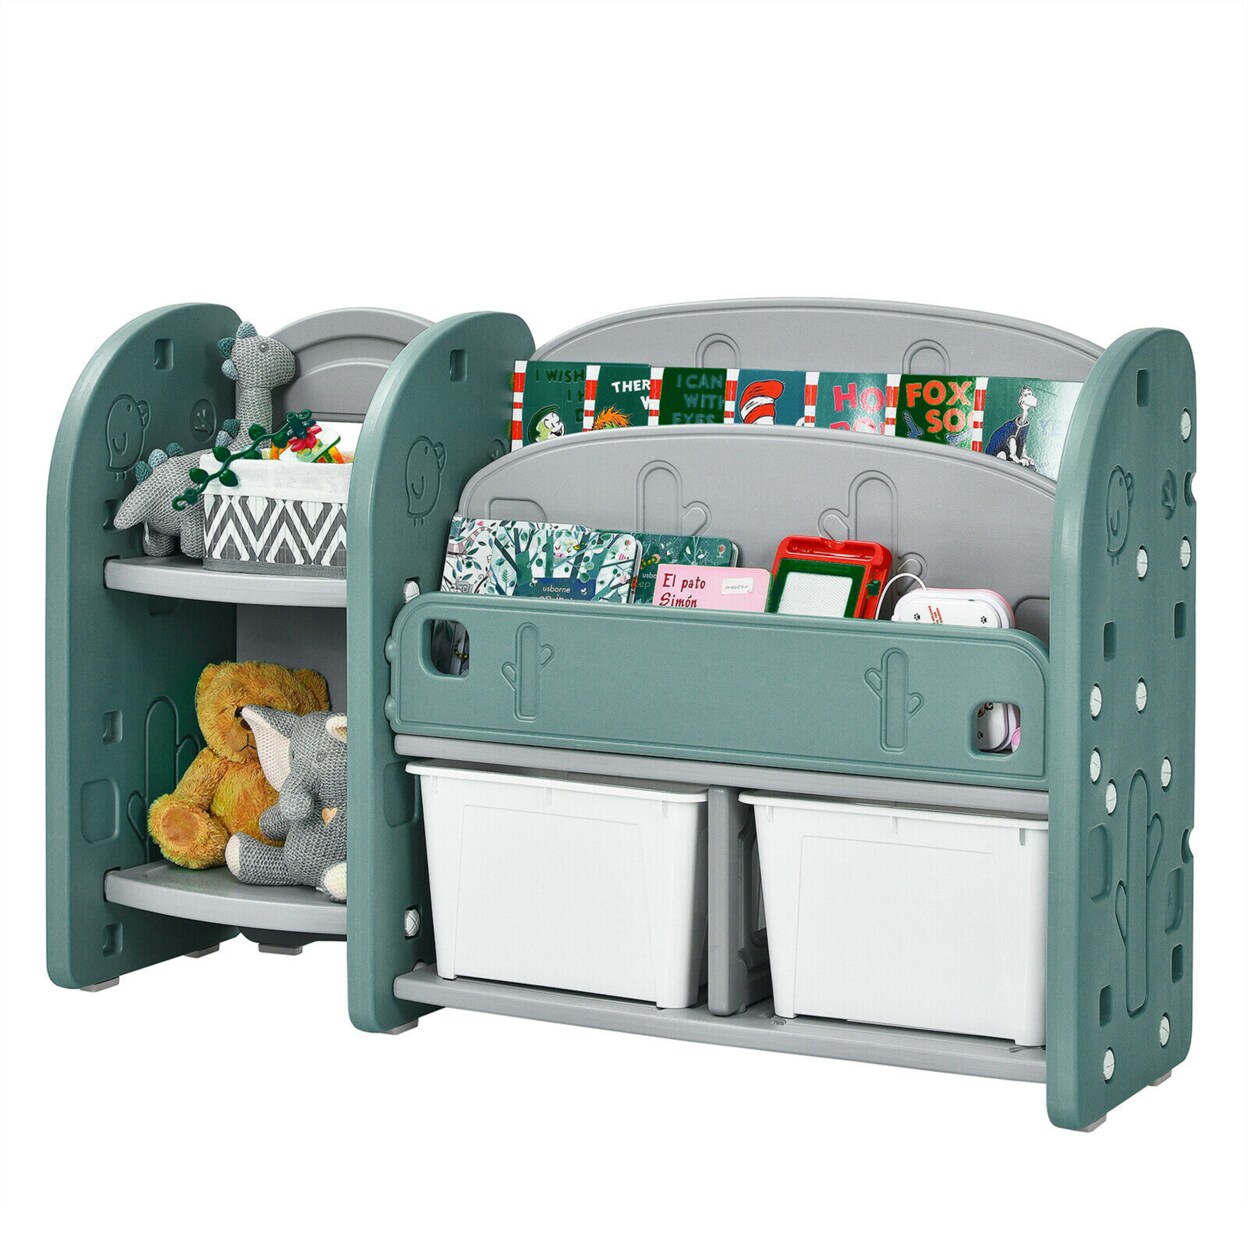 Kids Toy Storage Organizer With Plastic Bins, Storage Box Shelf